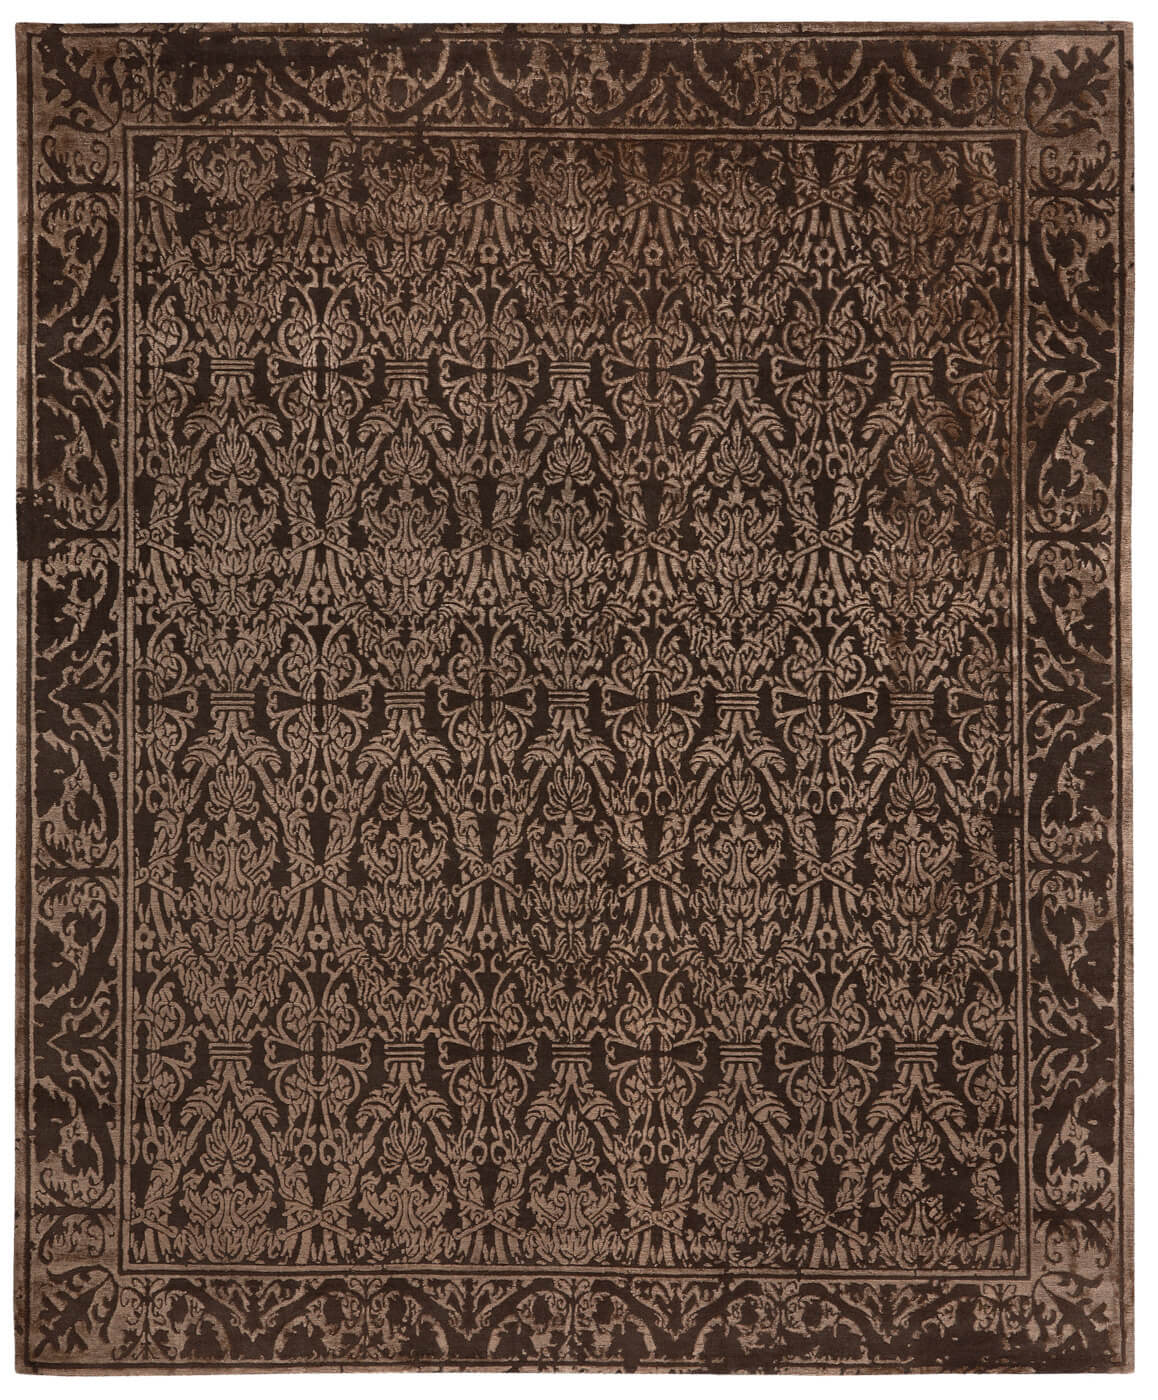 Элитный ковер Alcaraz Little Rocked коричневый из коллекции Яна Ката